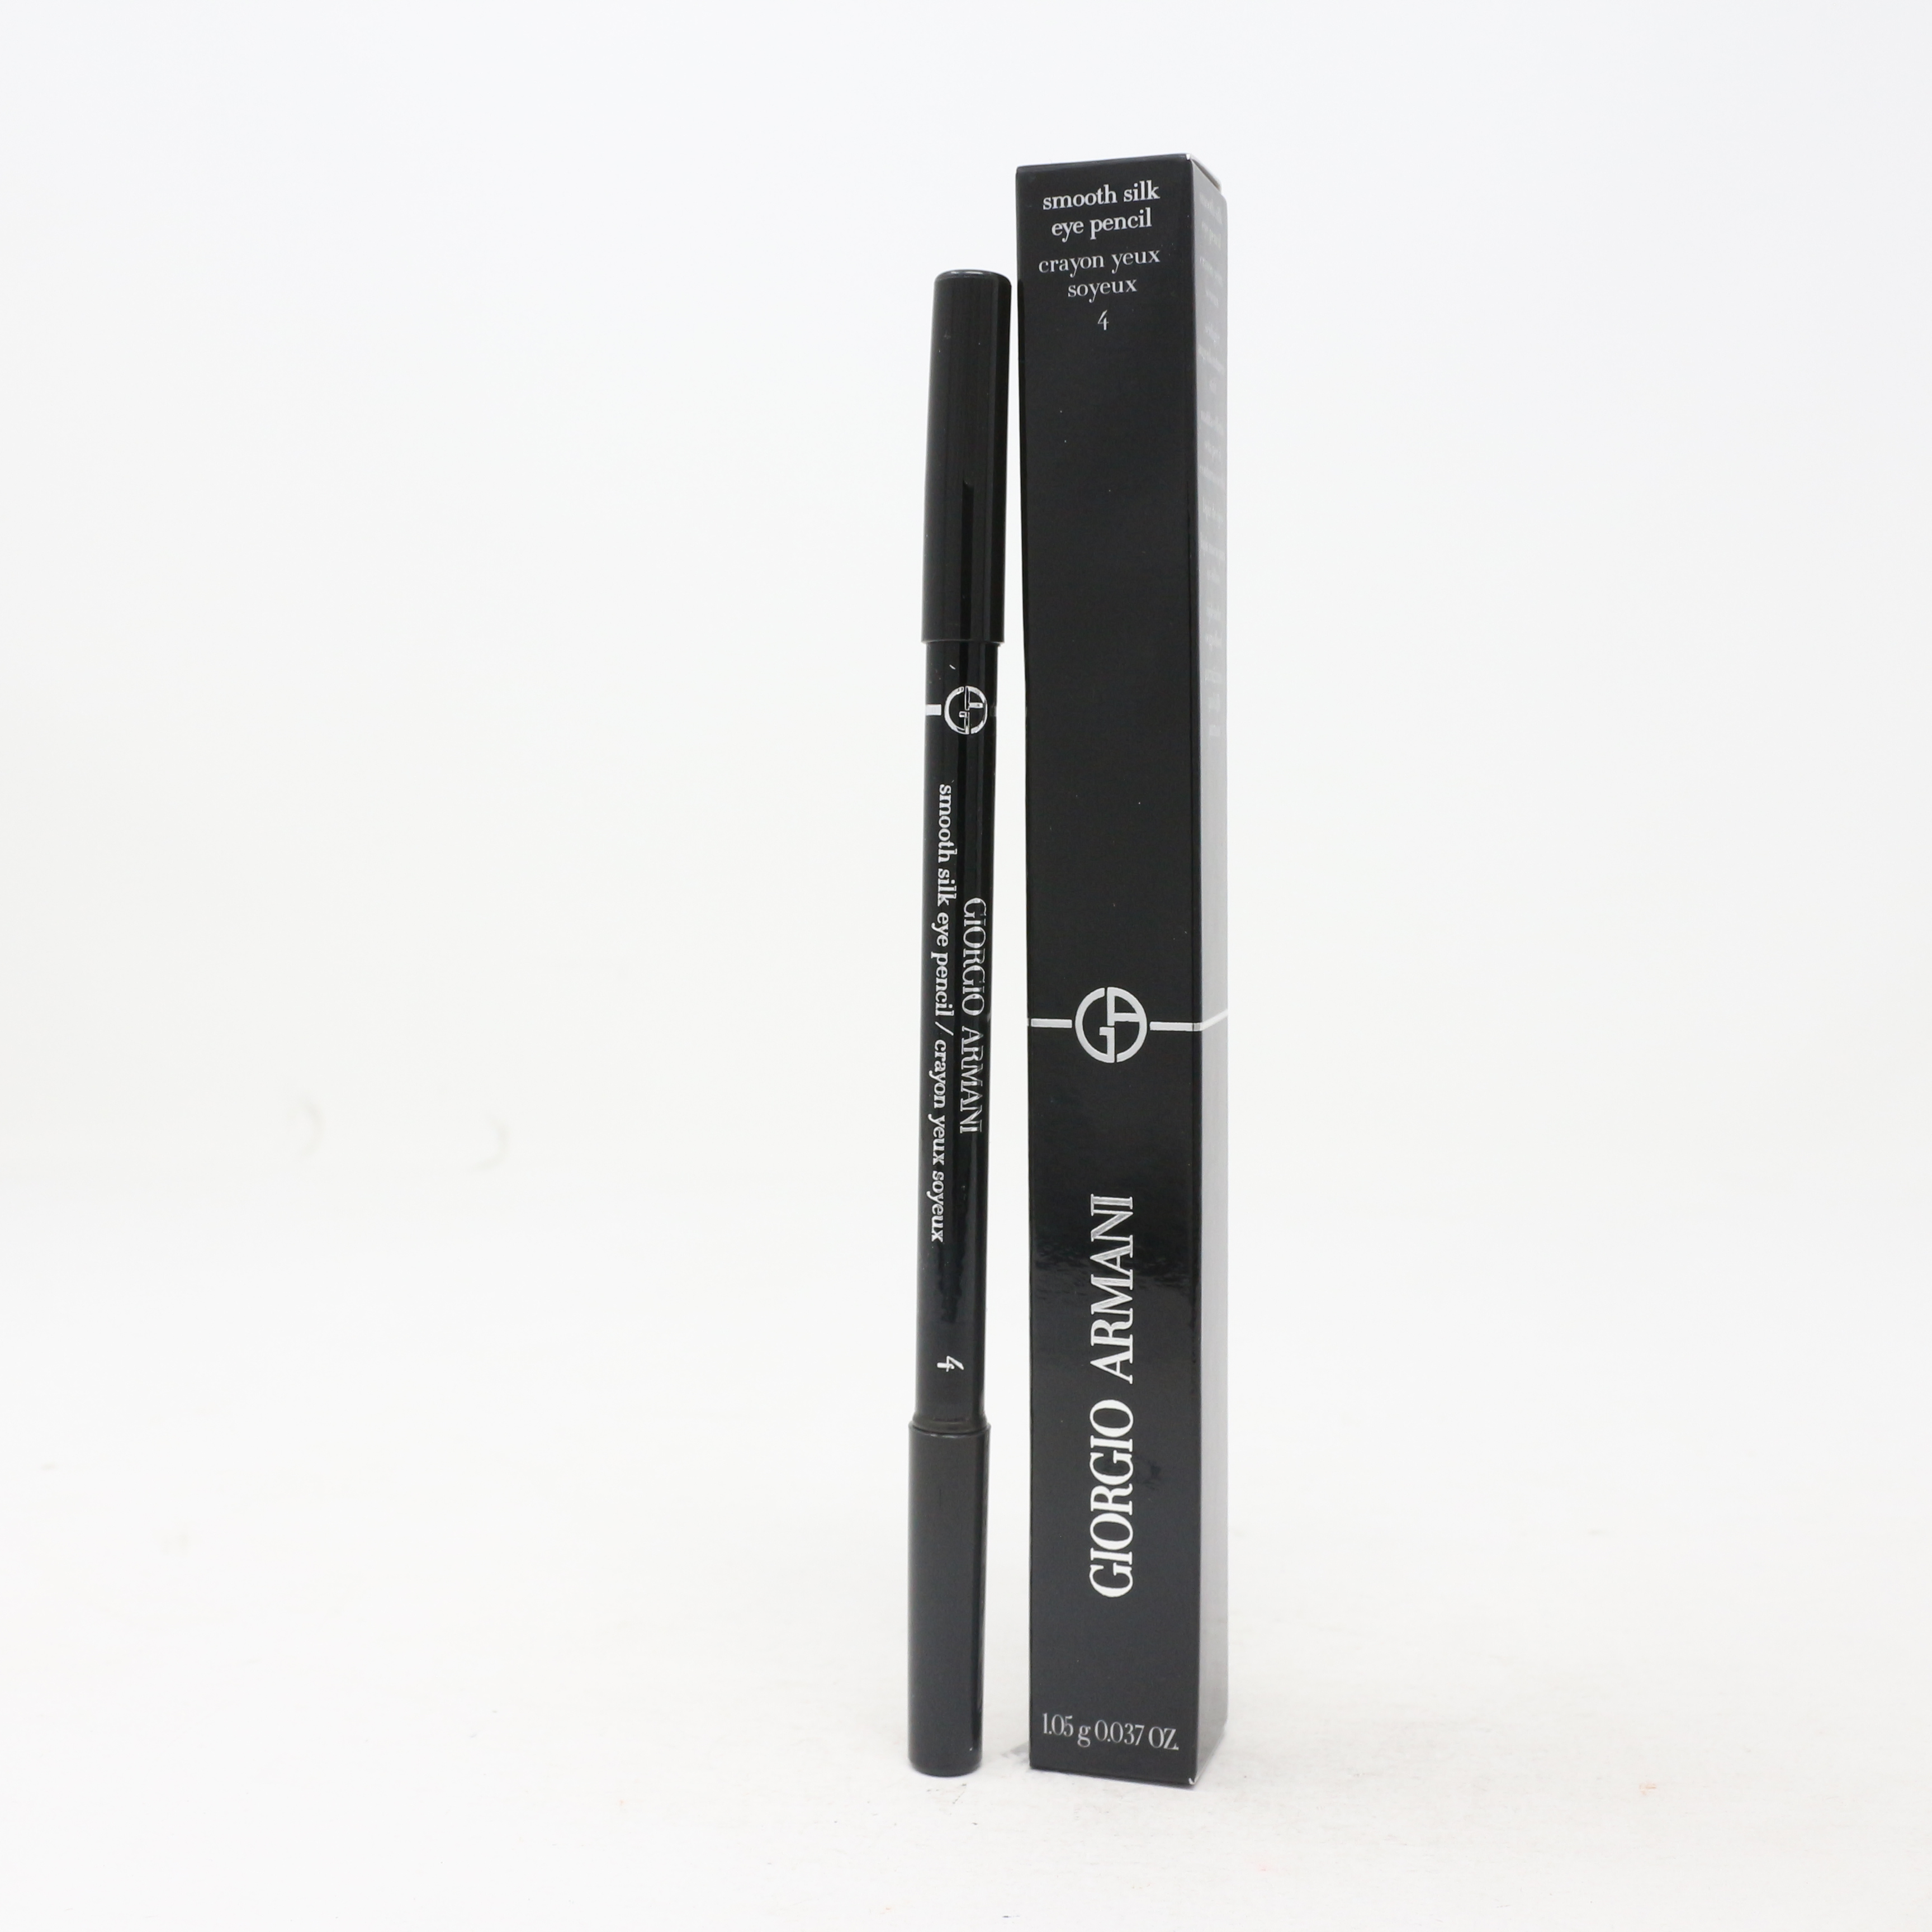 Giorgio Armani Smooth Silk Eye Pencil / New In Box | eBay